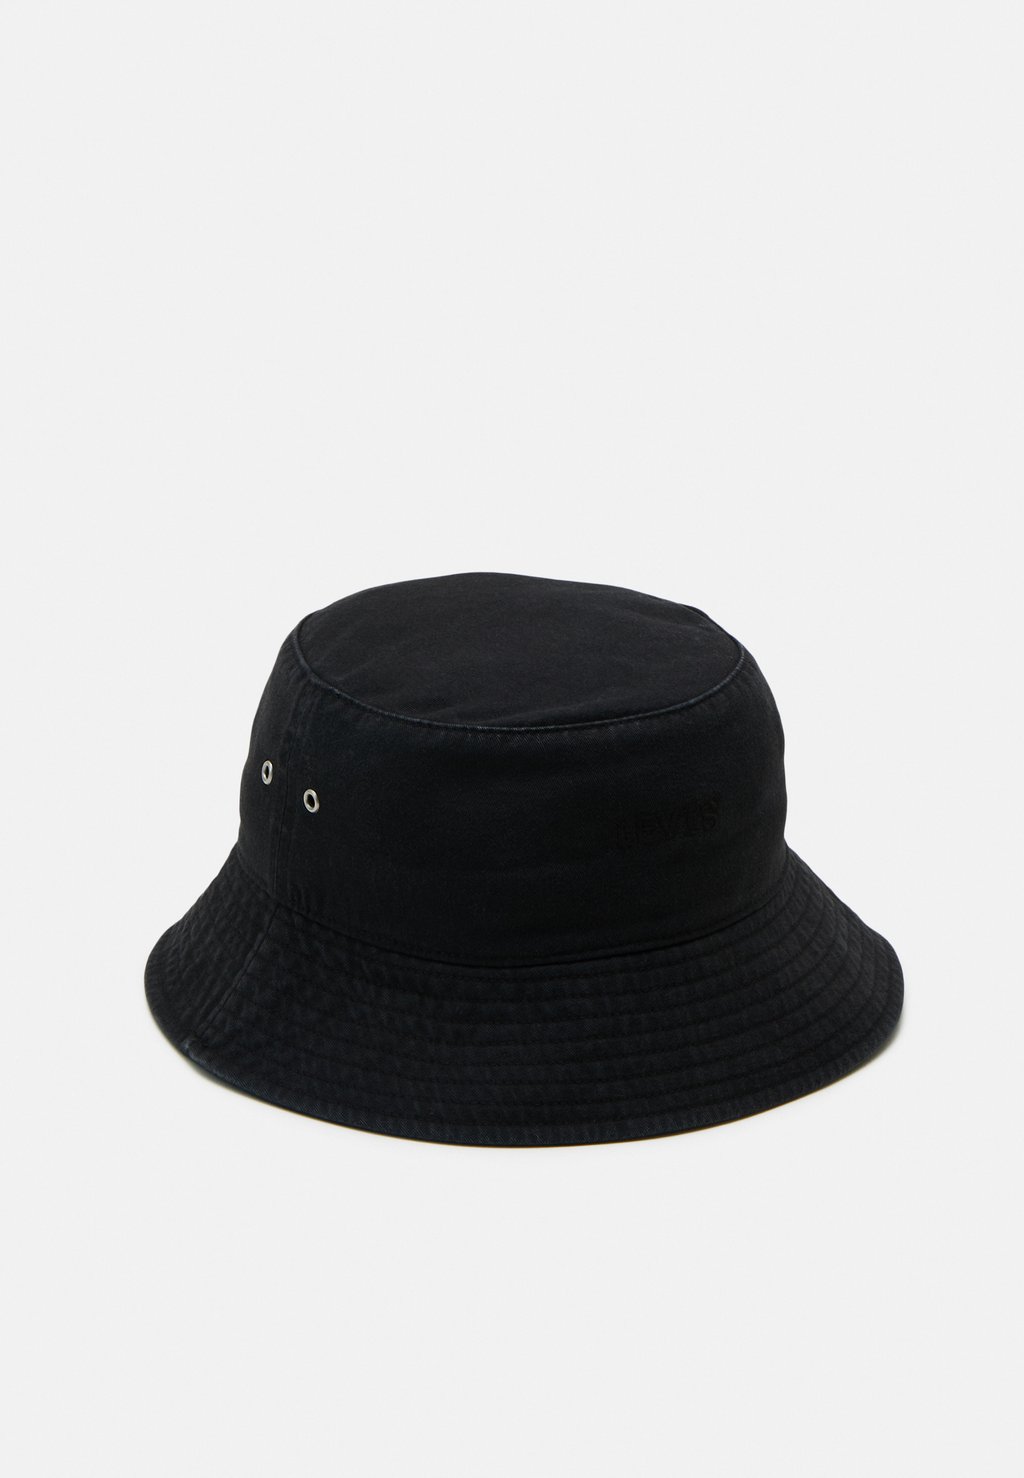 Панама HEADLINE BUCKET HAT UNISEX Levi's, цвет regular black панама logo bucket hat unisex calvin klein jeans цвет black